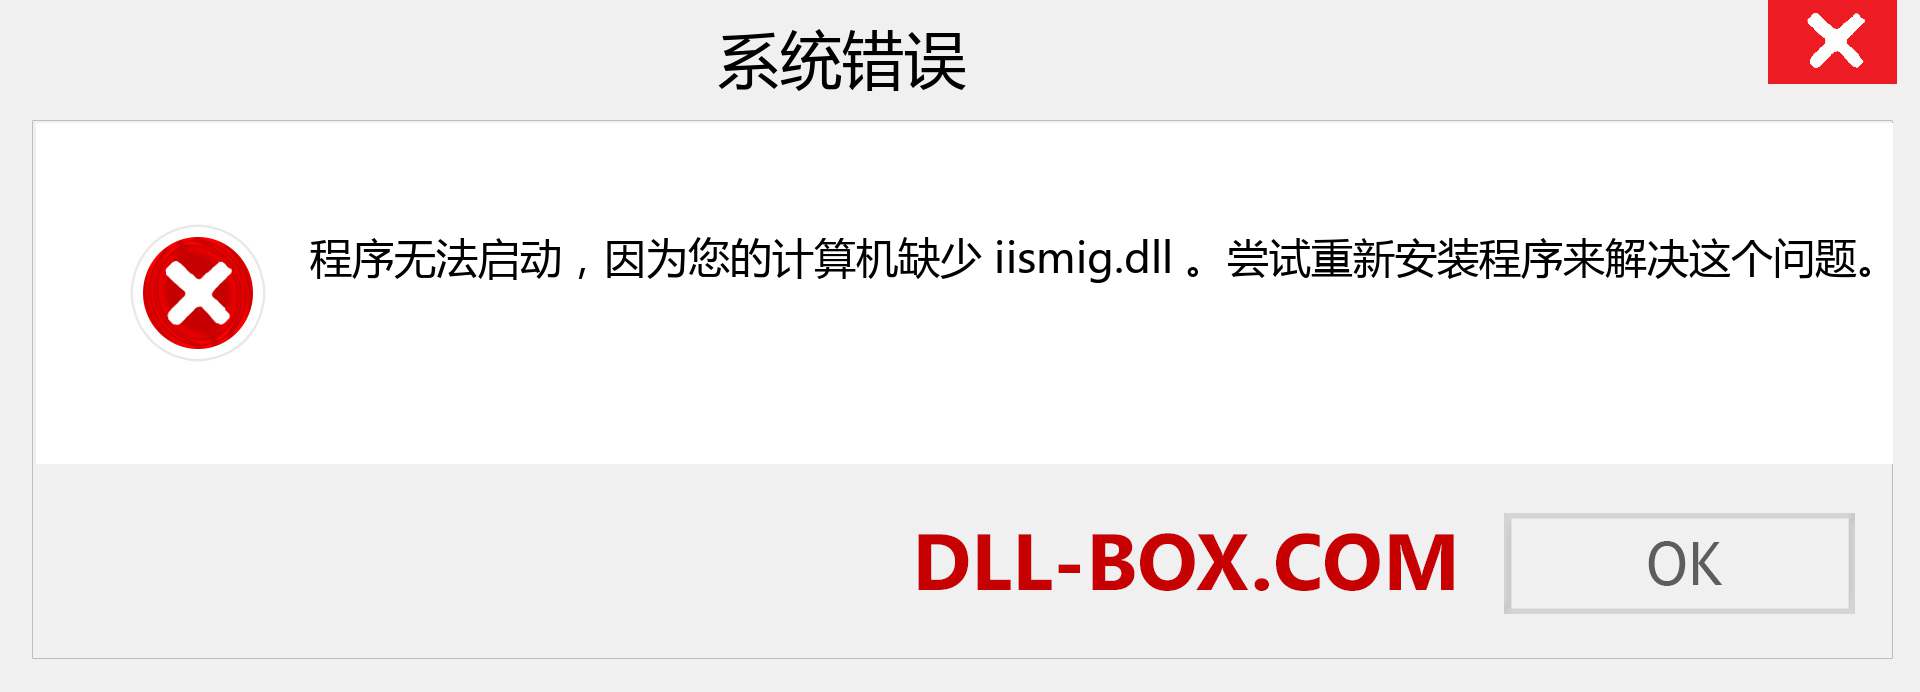 iismig.dll 文件丢失？。 适用于 Windows 7、8、10 的下载 - 修复 Windows、照片、图像上的 iismig dll 丢失错误